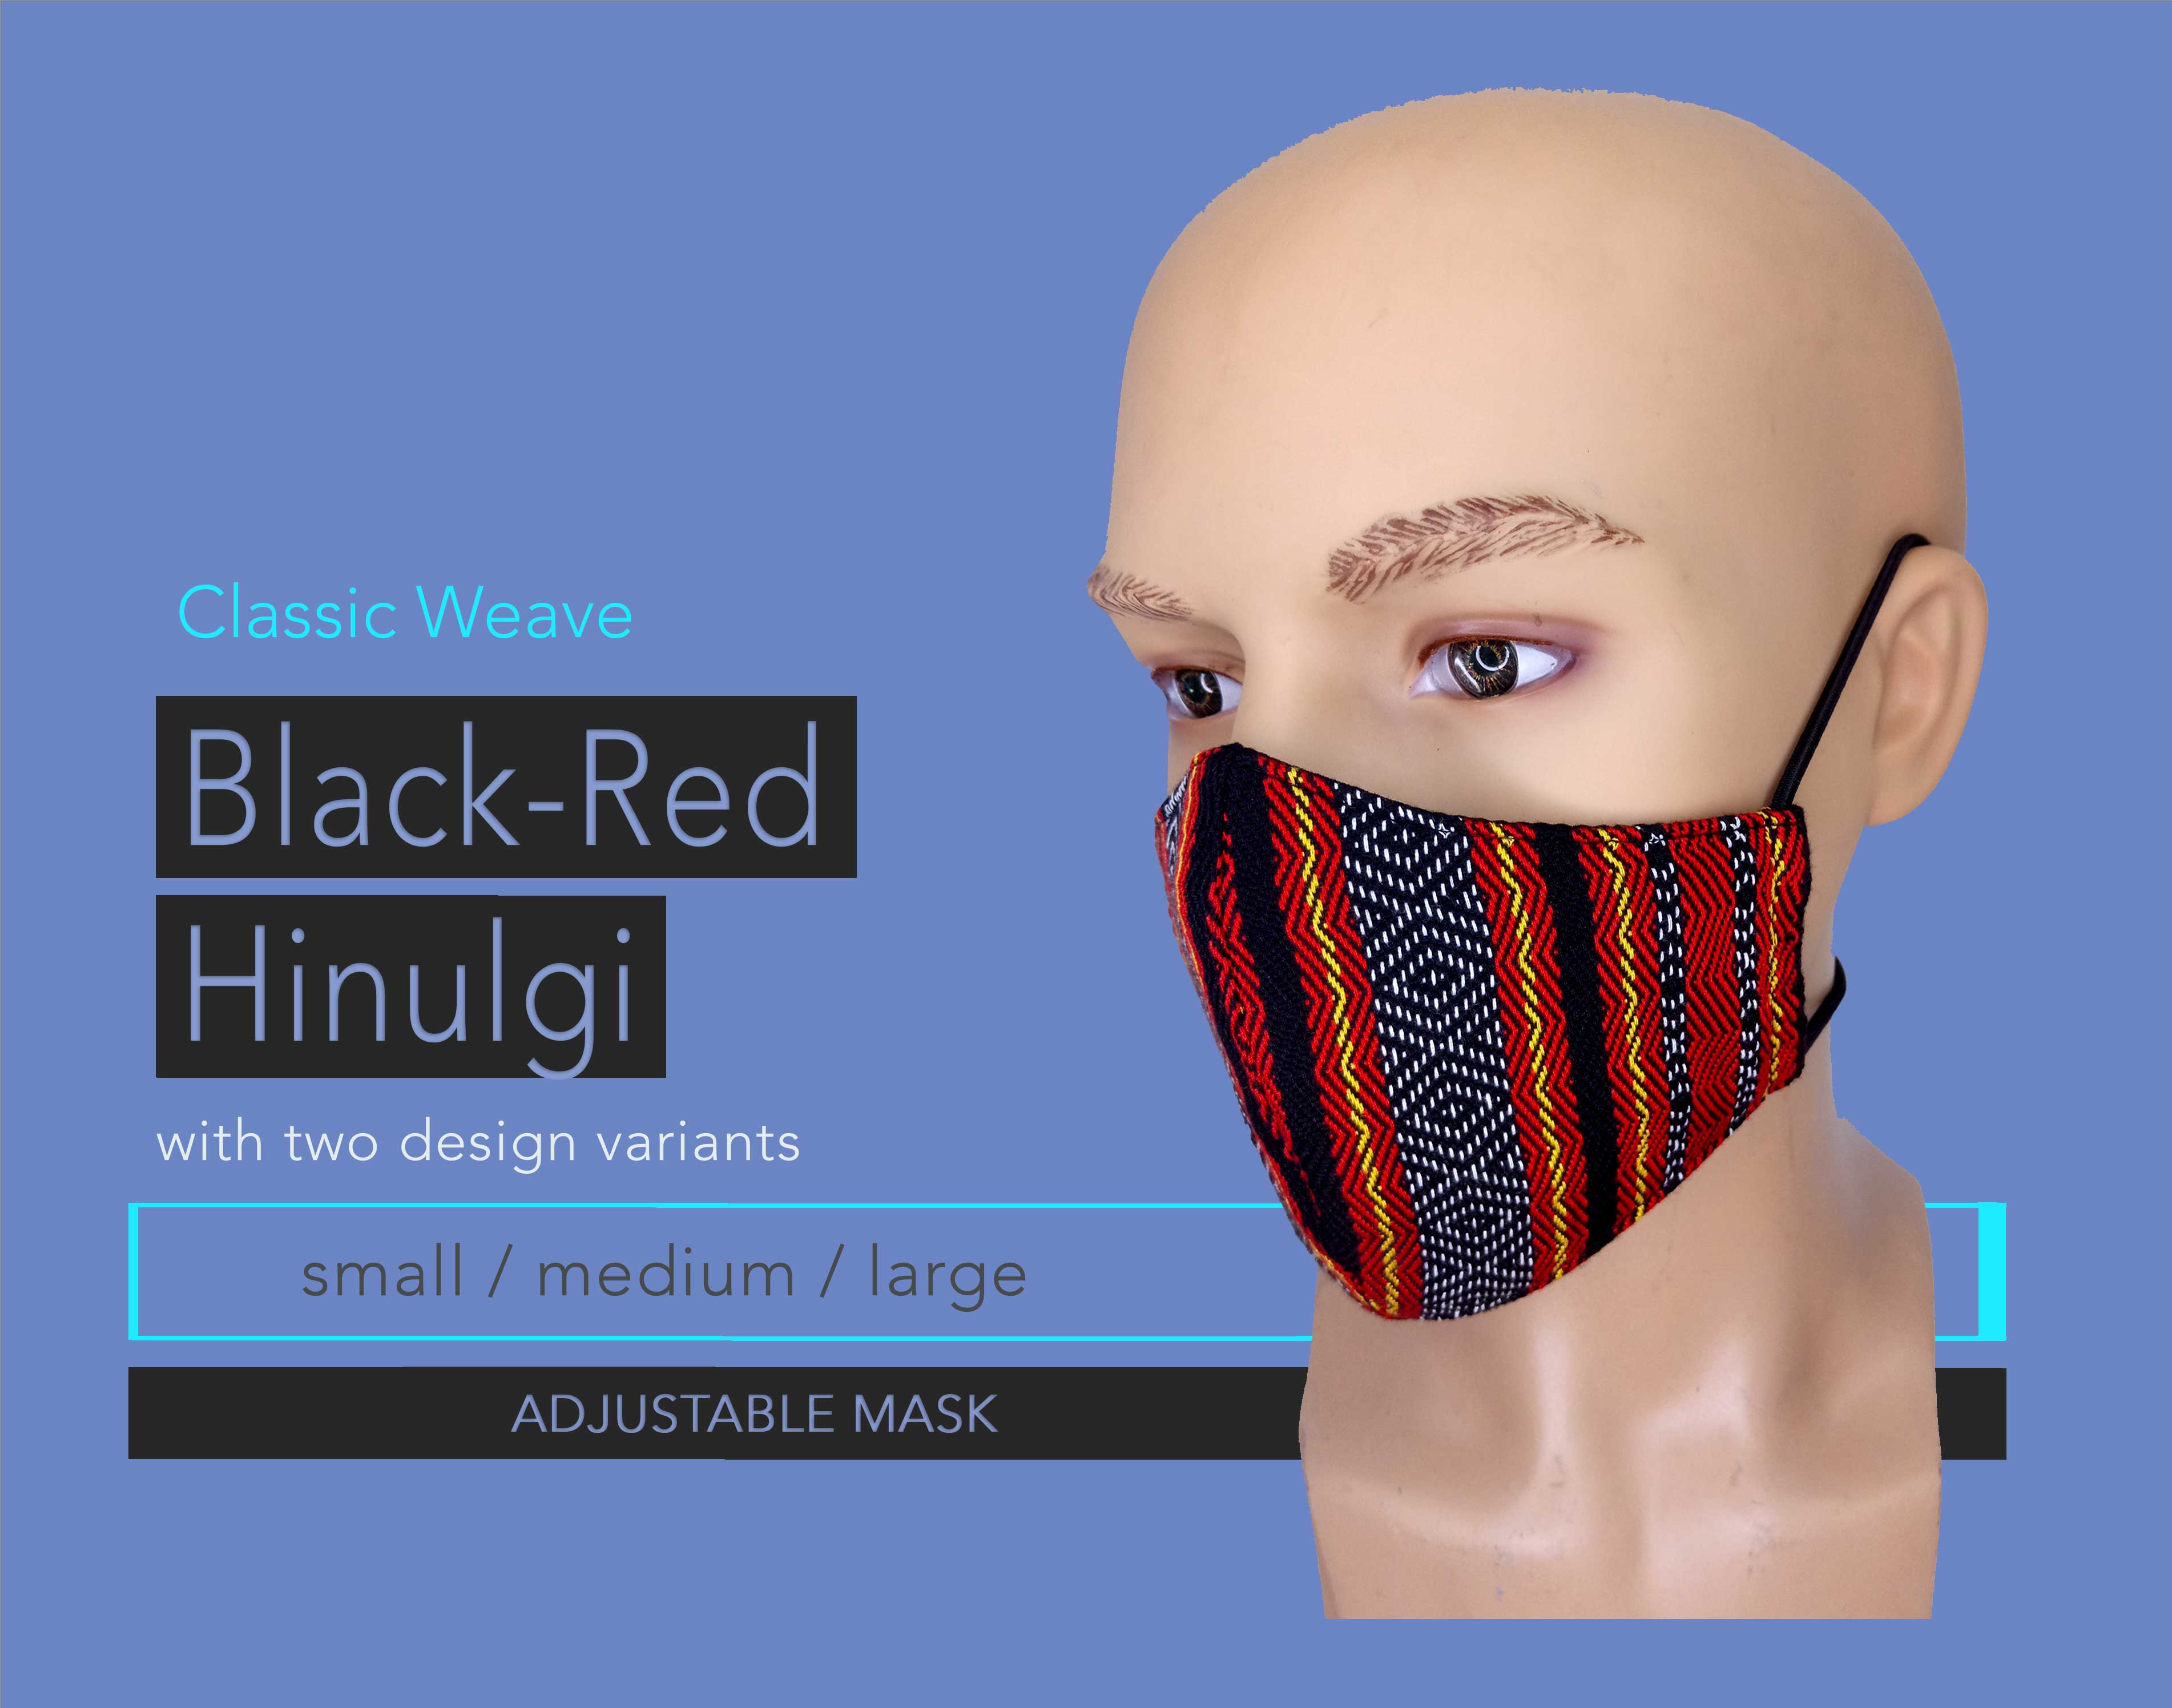 Black-Red Hinulgi